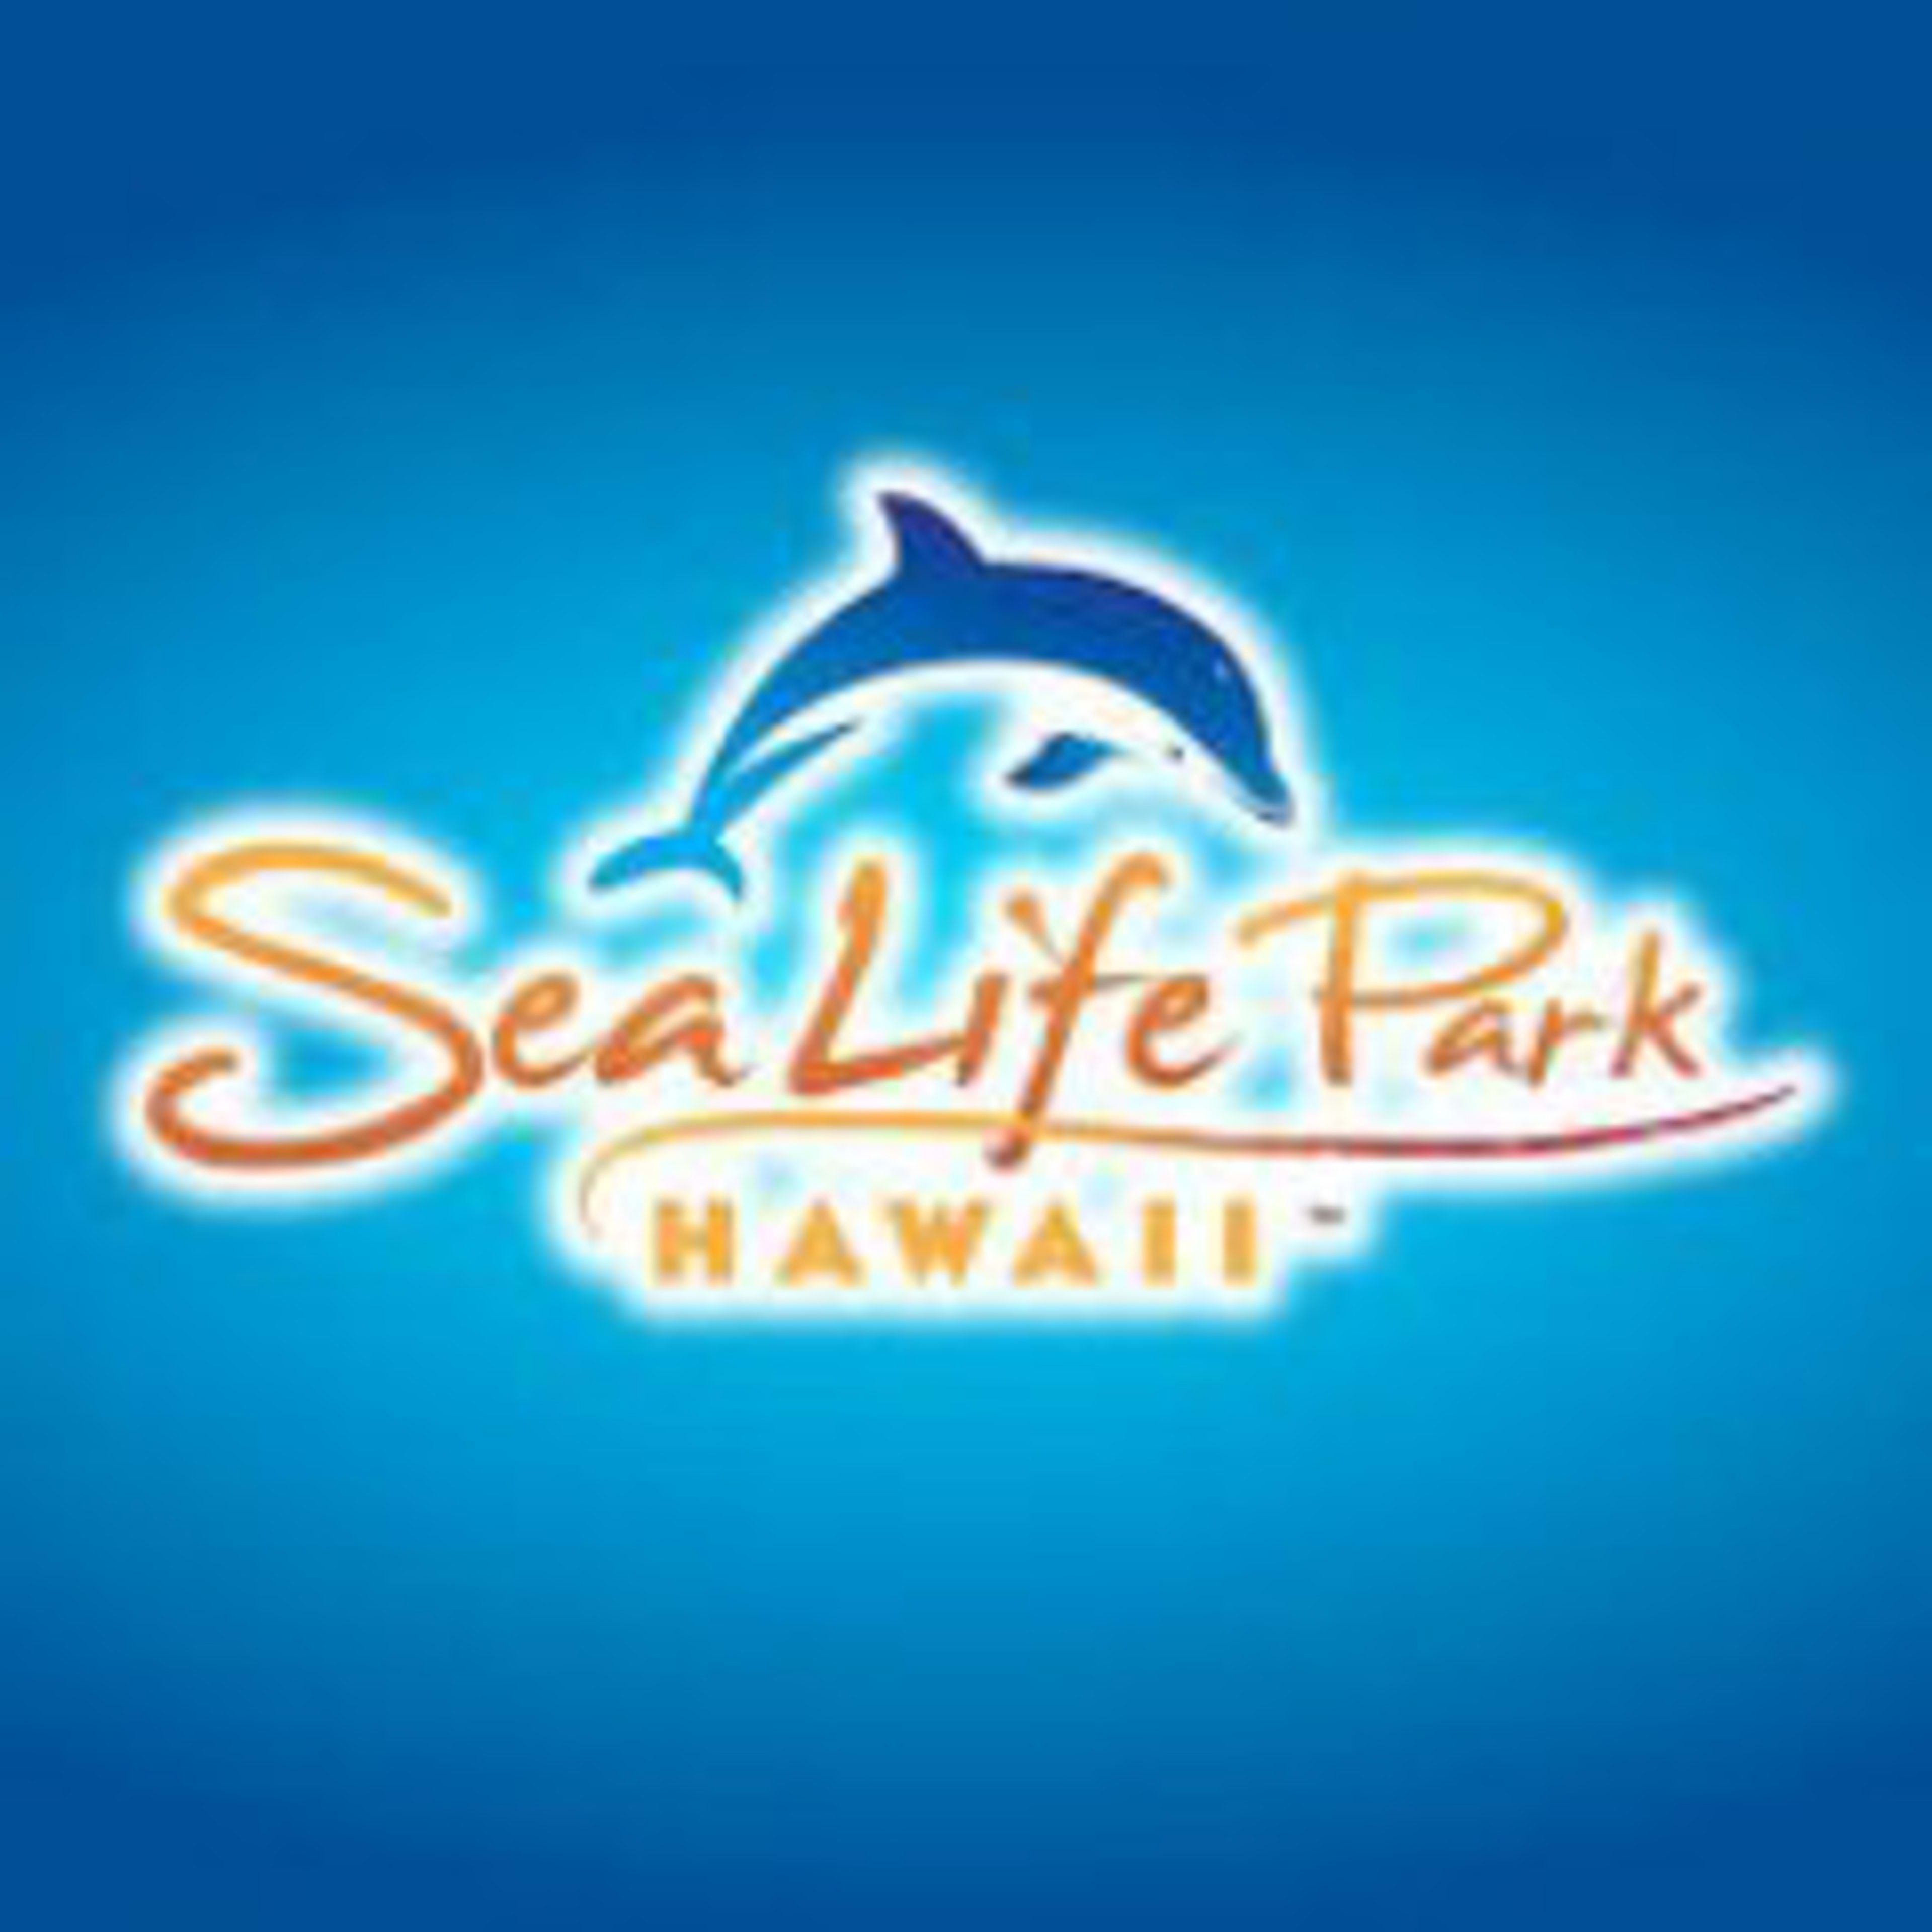 Sea Life Park Hawaii Code